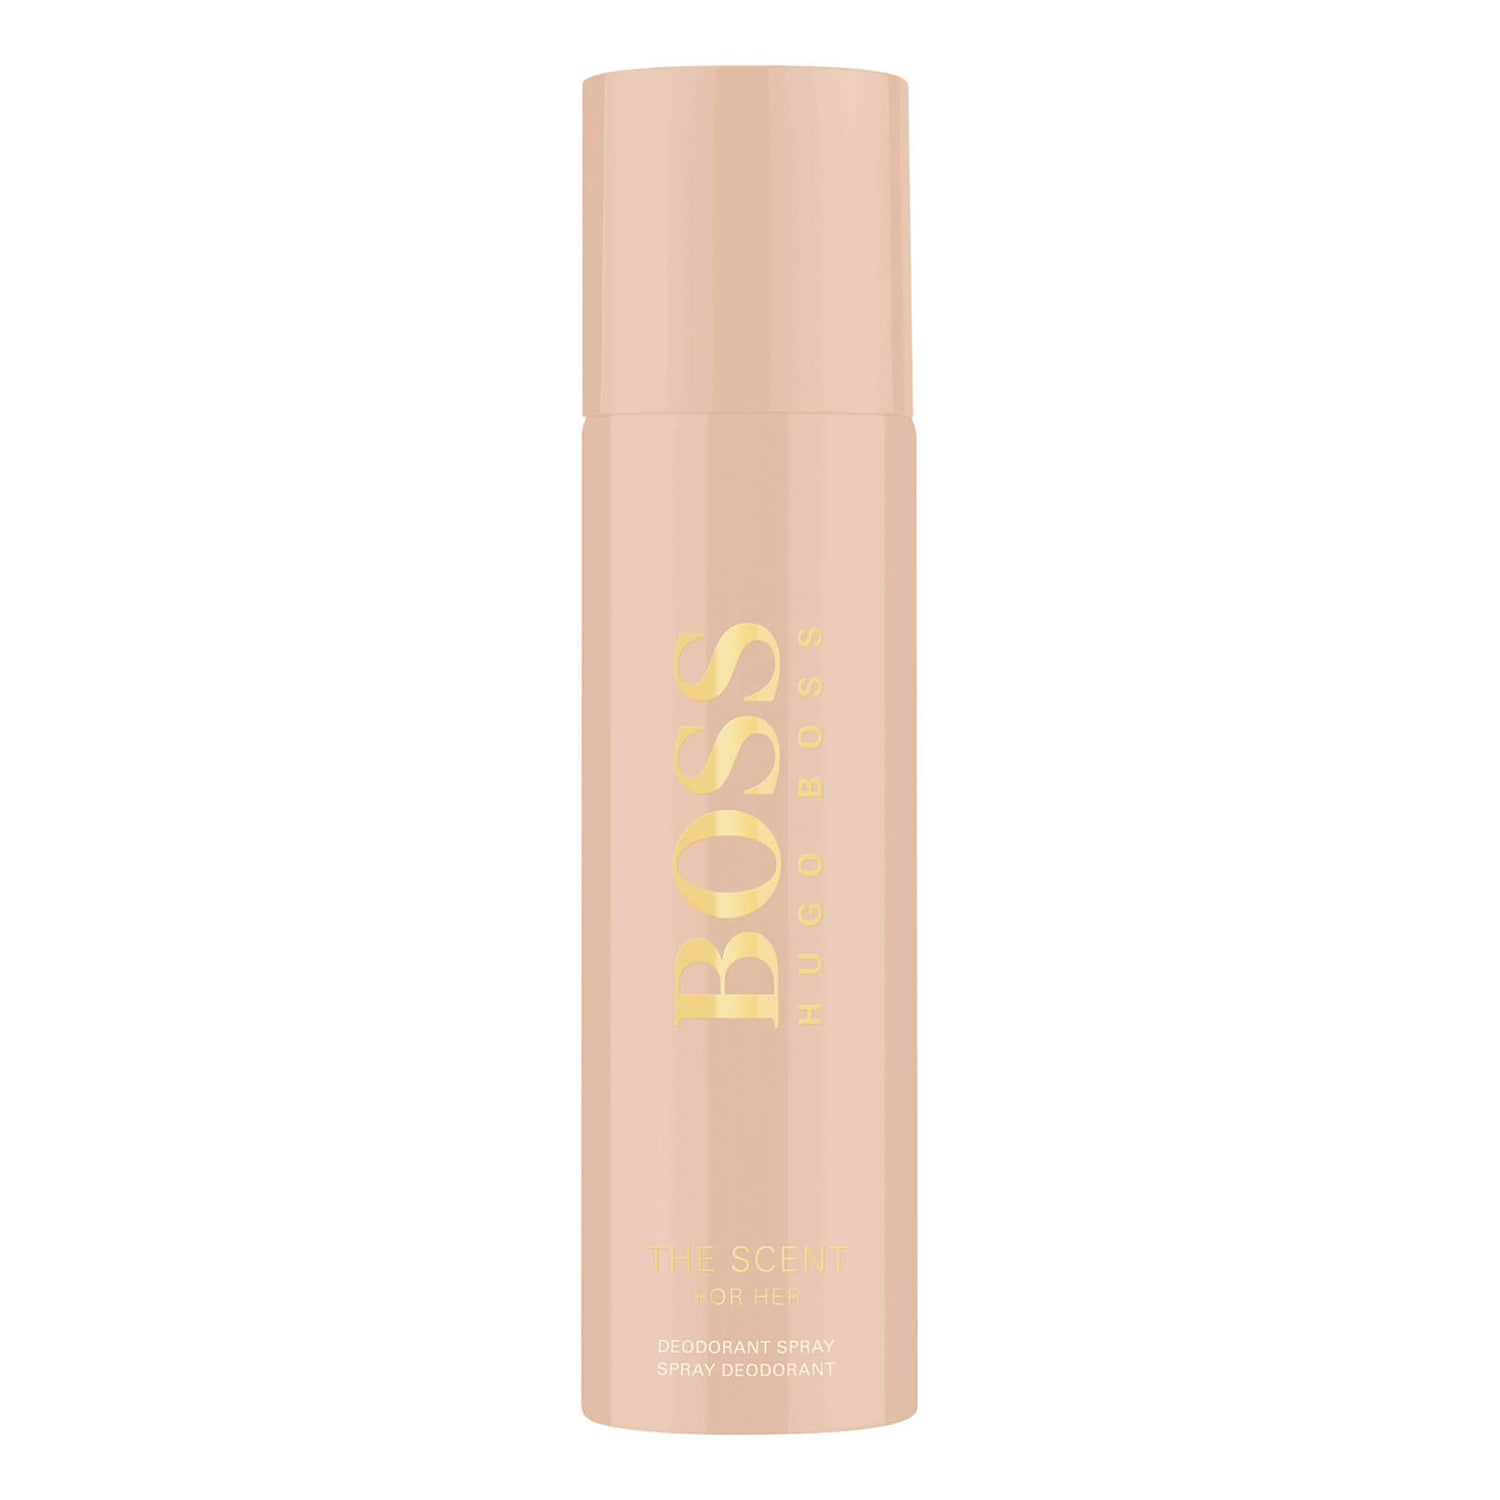 Hugo Boss The for Her Deodorant Spray 150ml -